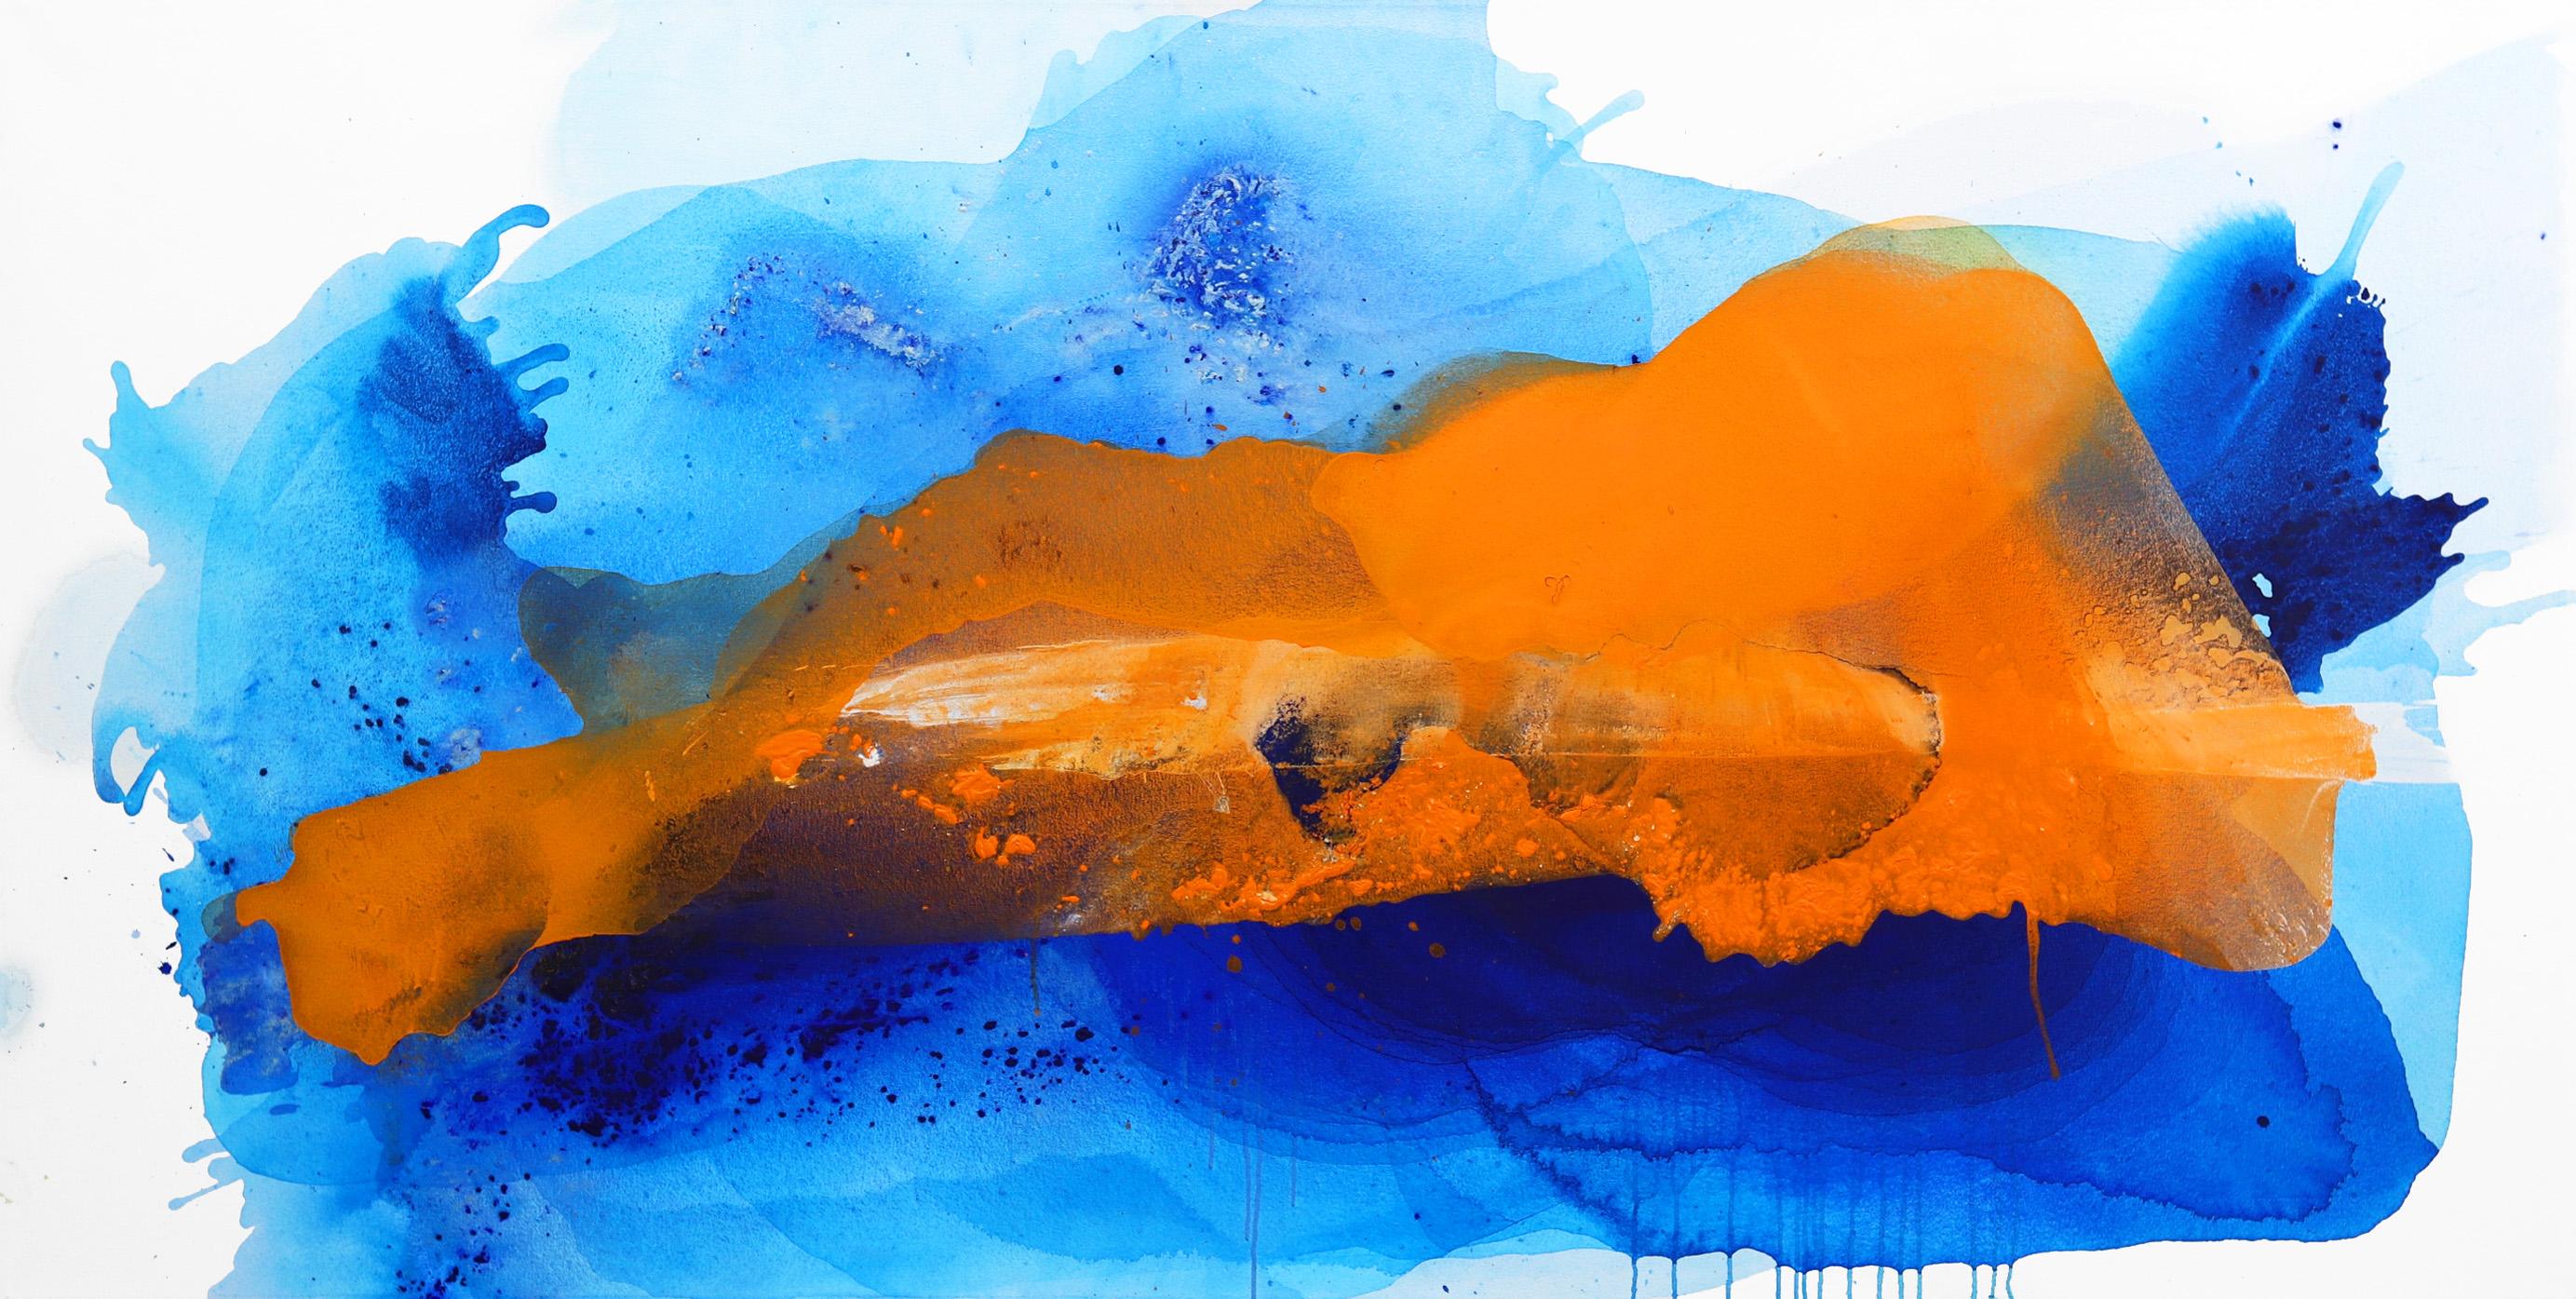 Abstract Painting Clara Berta - L'île dans le ciel  -  Grande peinture abstraite de l'océan bleu et du coucher de soleil orange